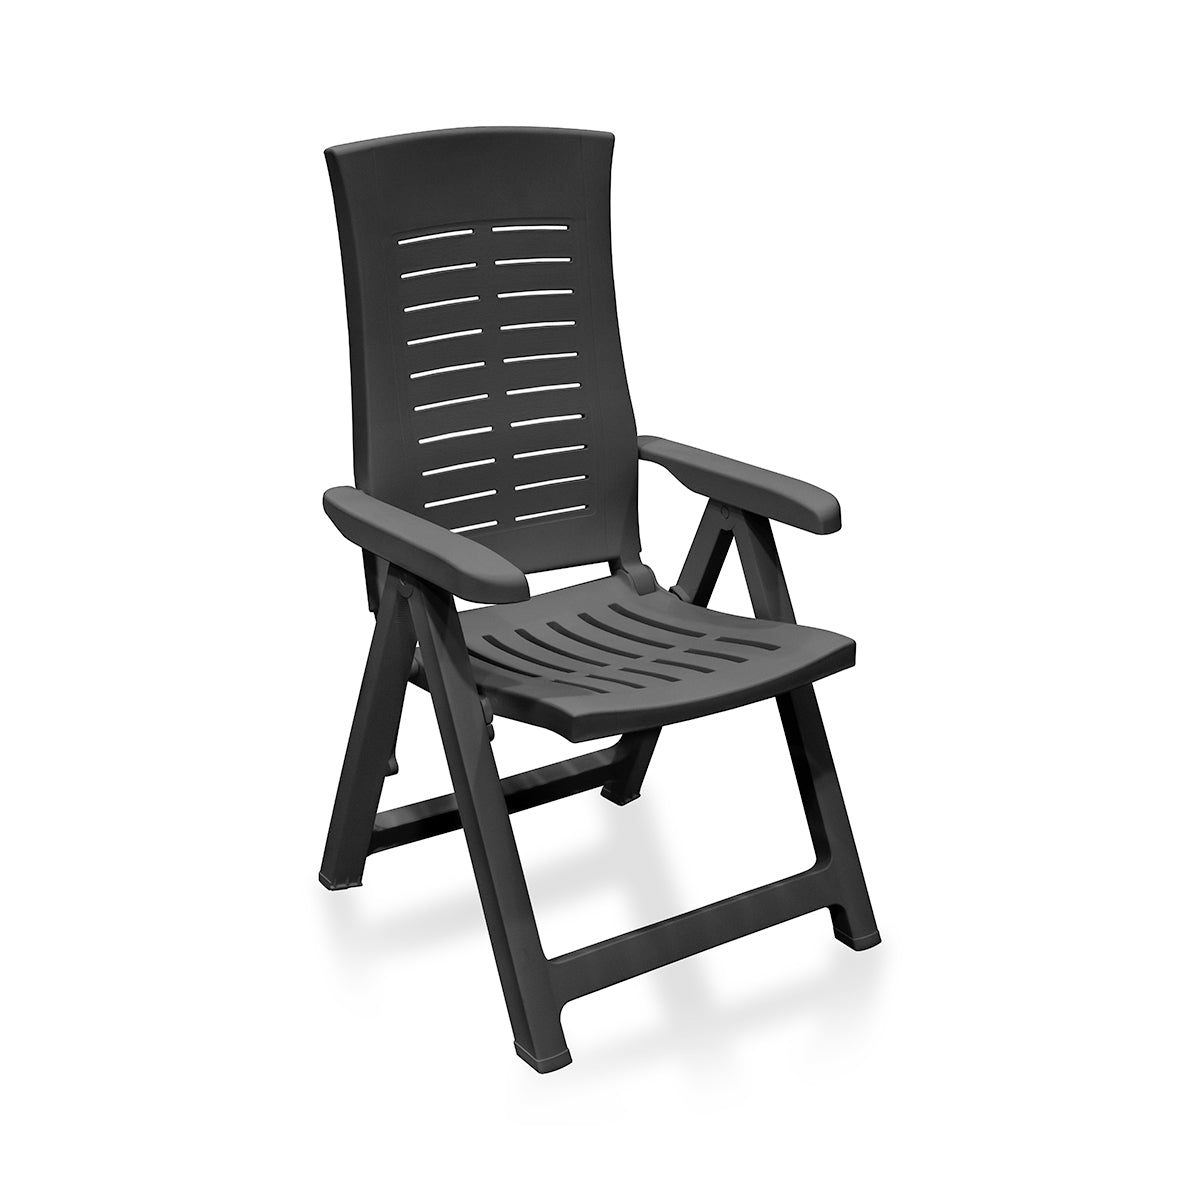 Set sillas plegables cuatro posiciones MONZA 58x62x108cm